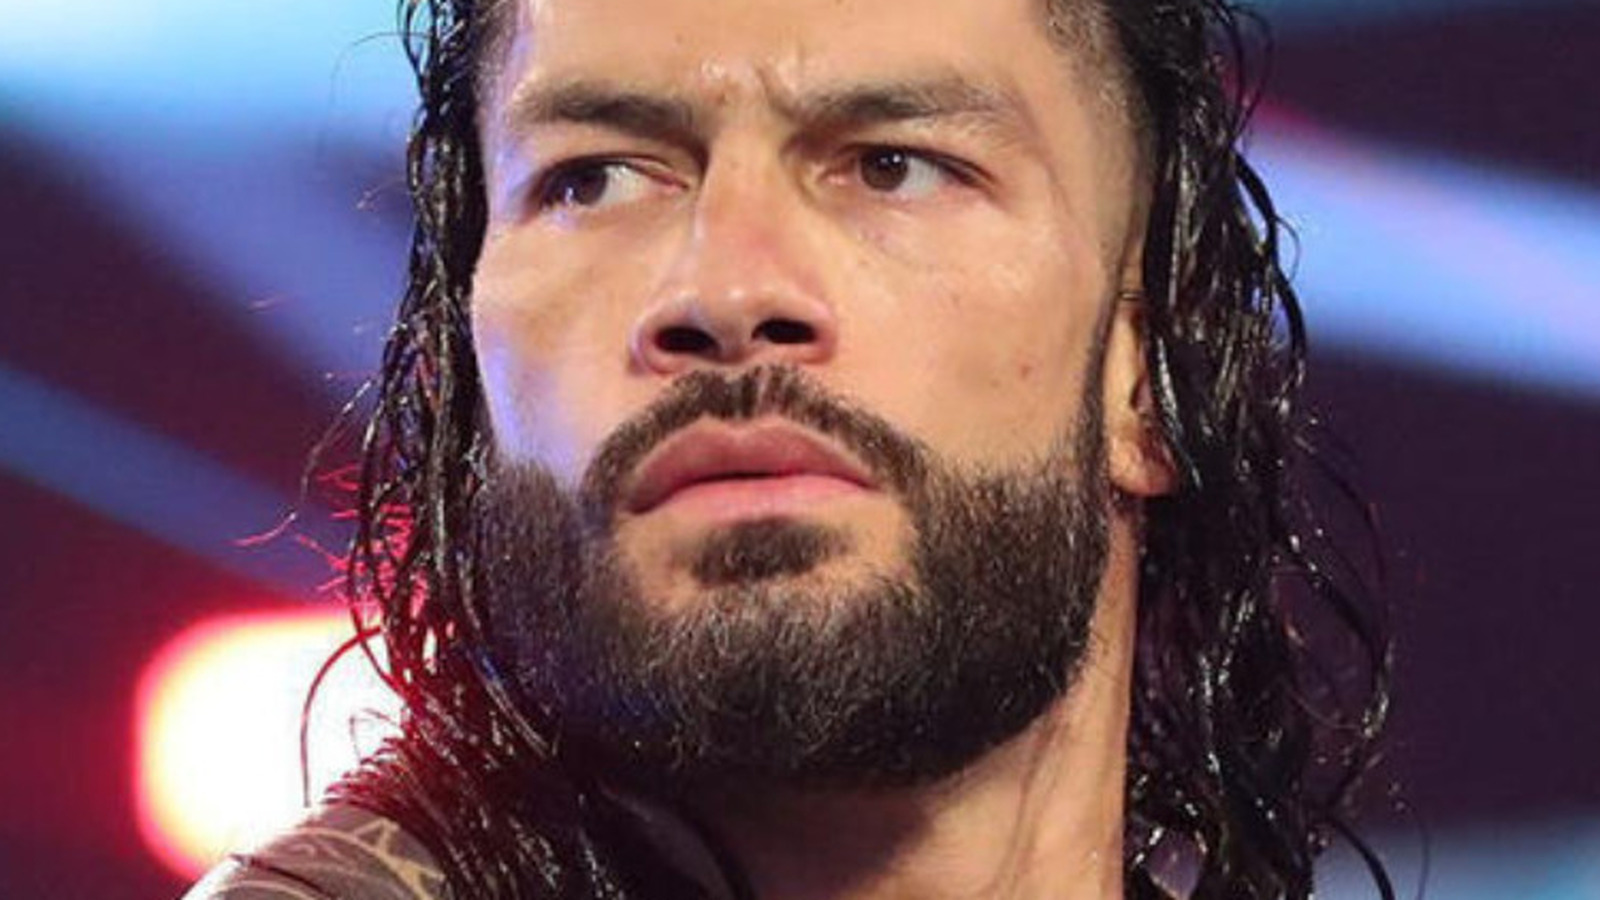 WWE publica imágenes del combate inédito de Roman Reigns